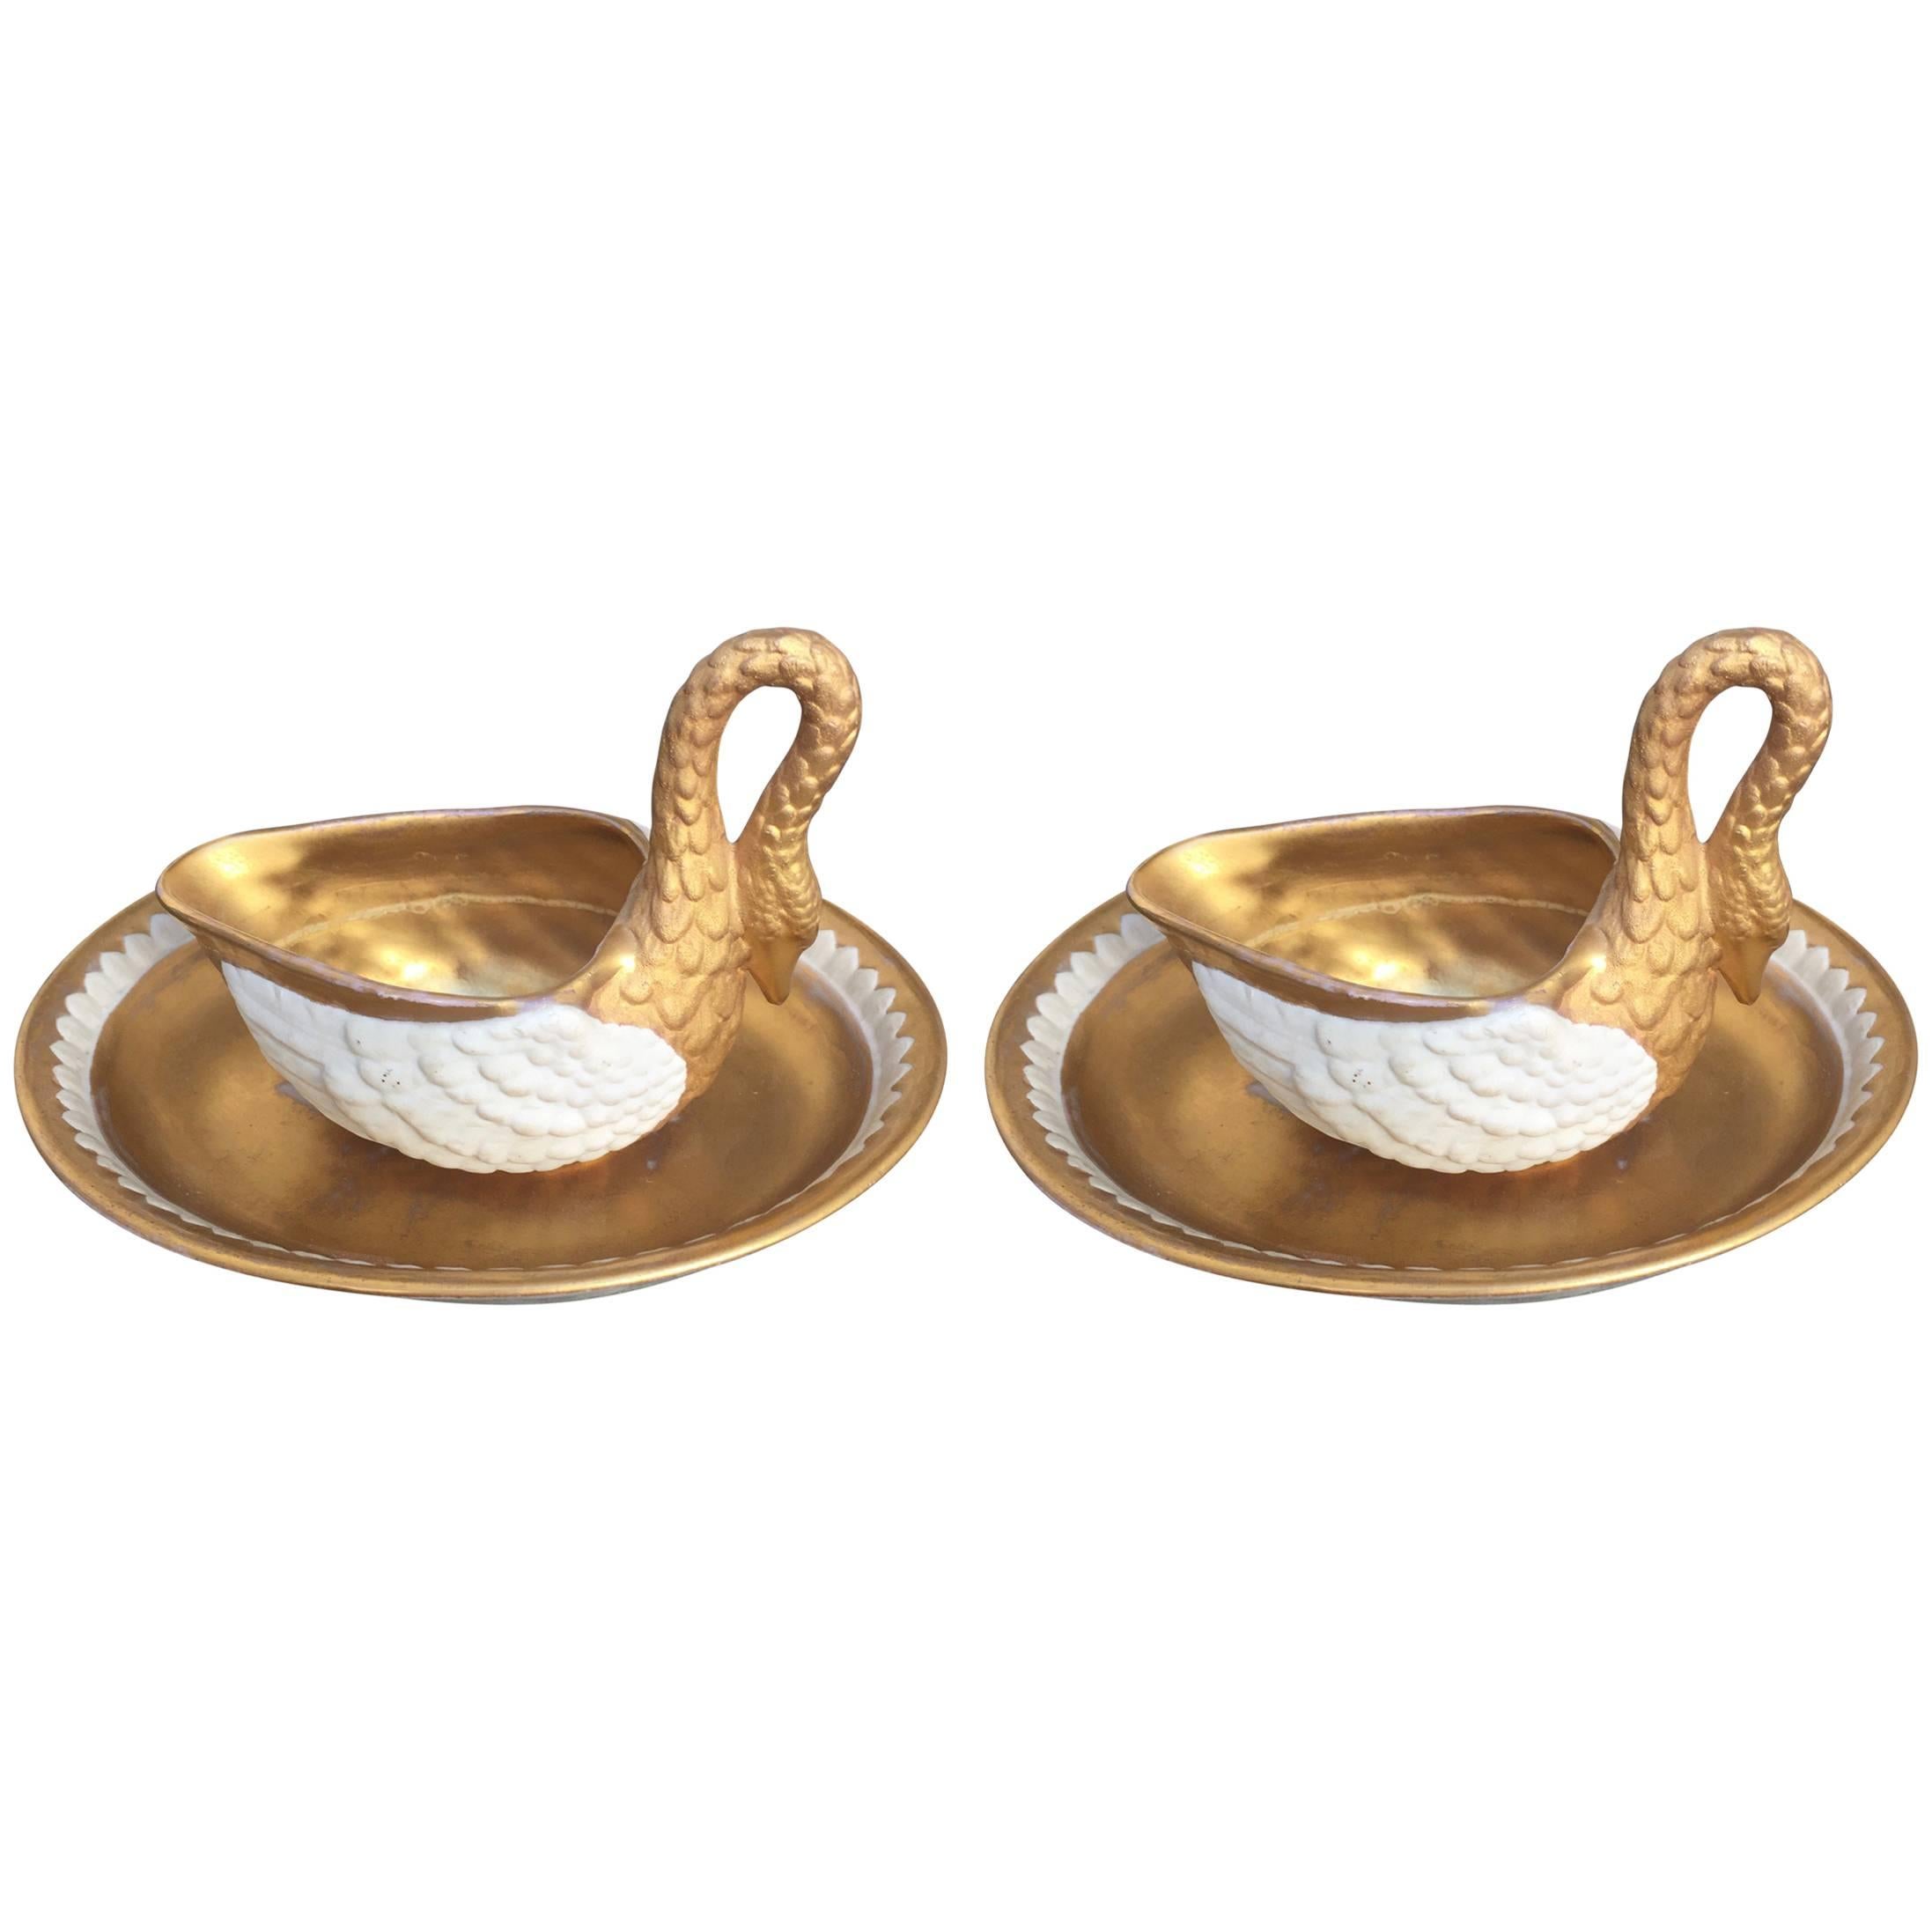 Paire de tasses crème en forme de cygne de style Sèvres